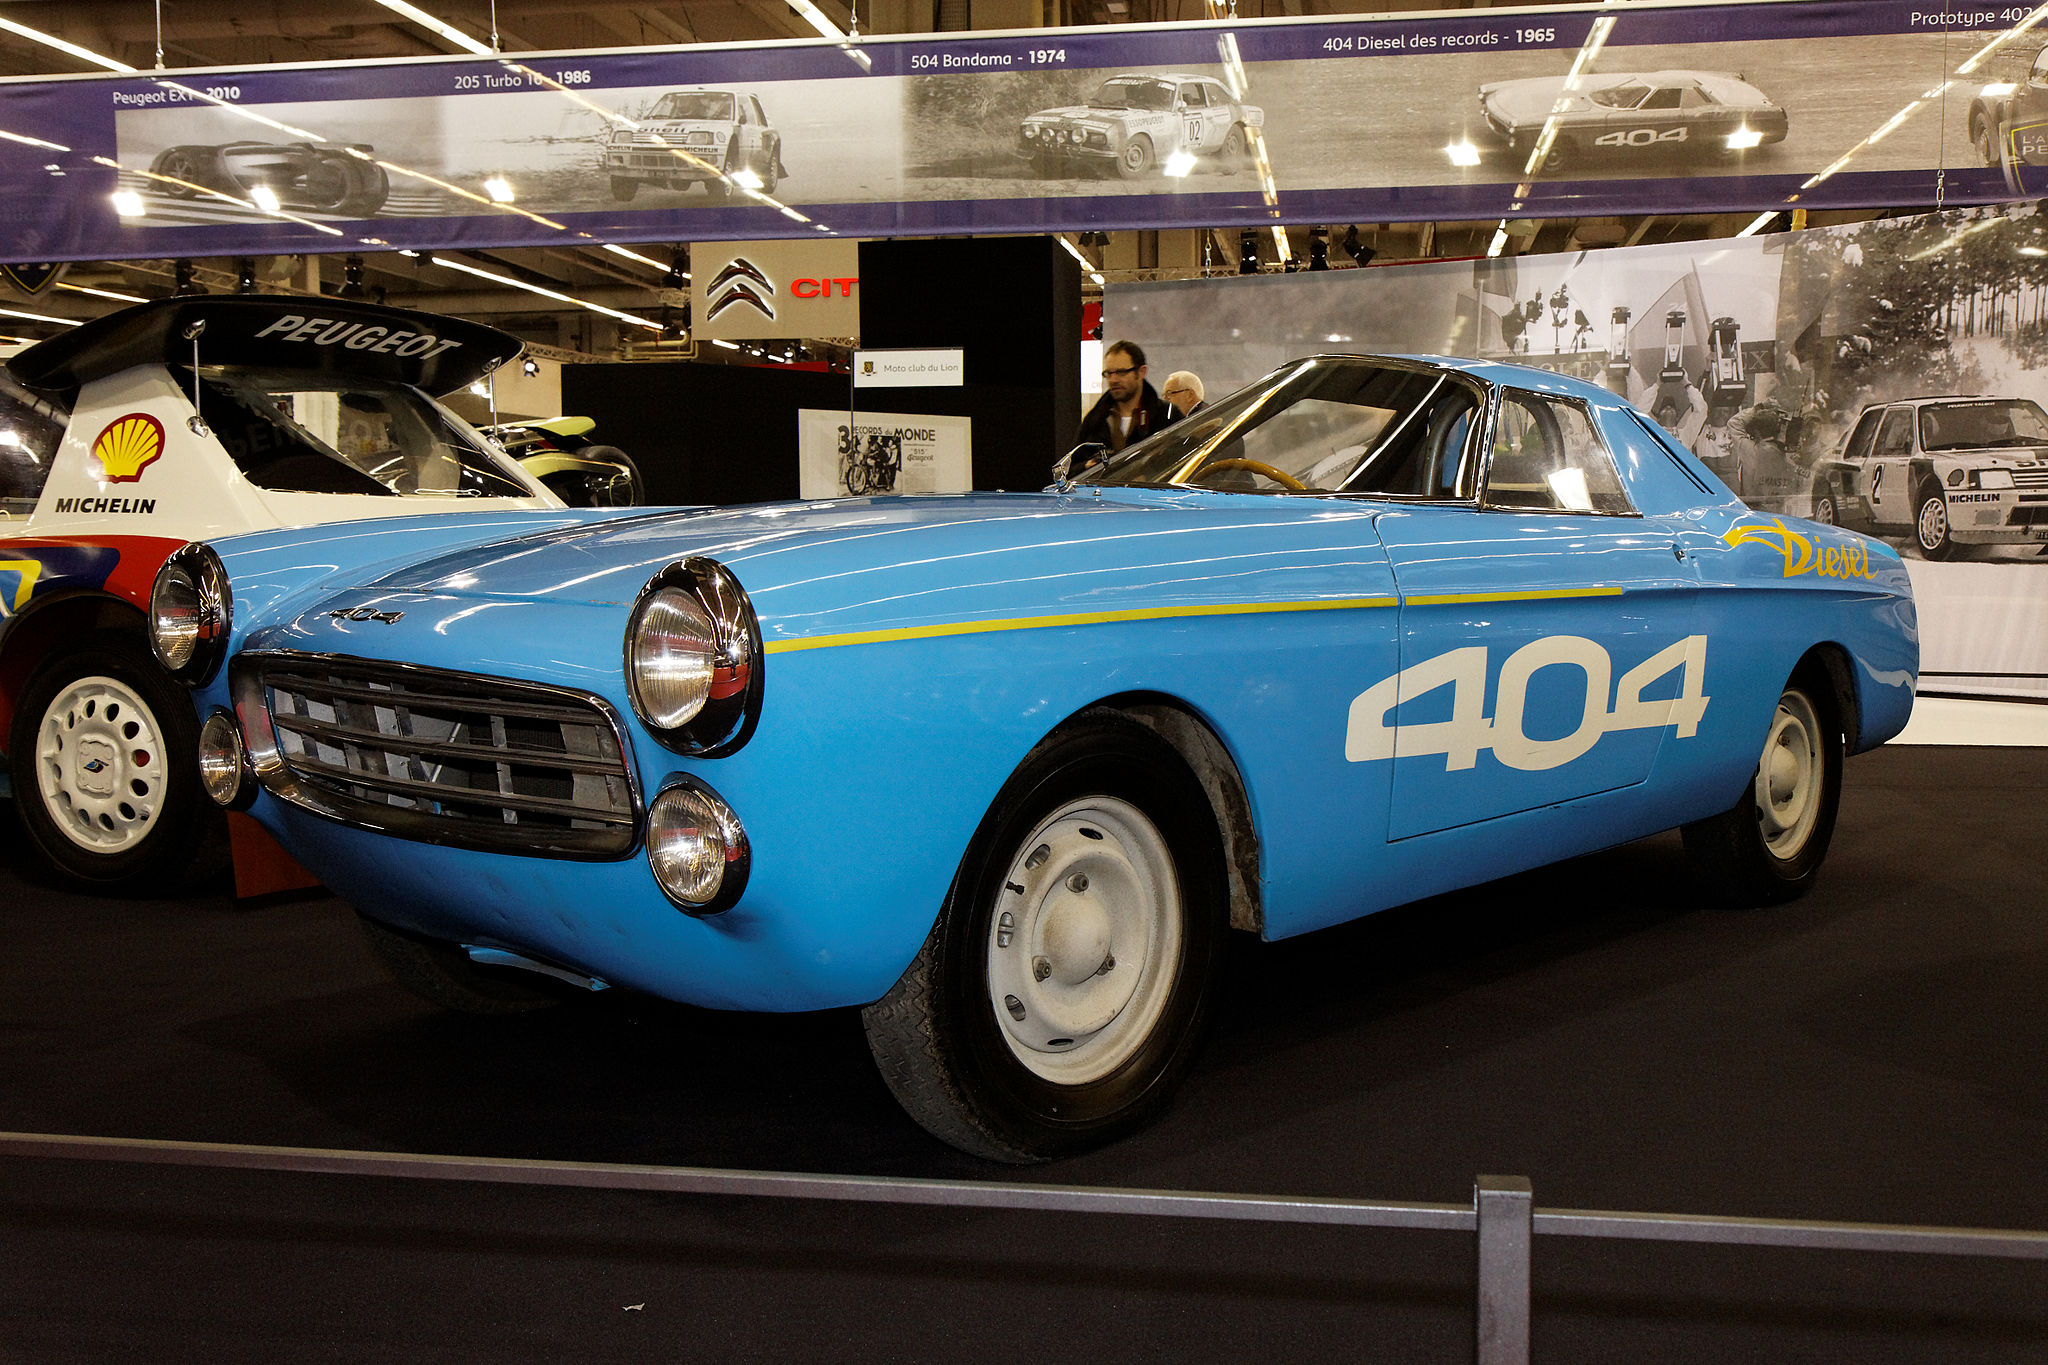 Peugeot 404 diesel des records - 1965